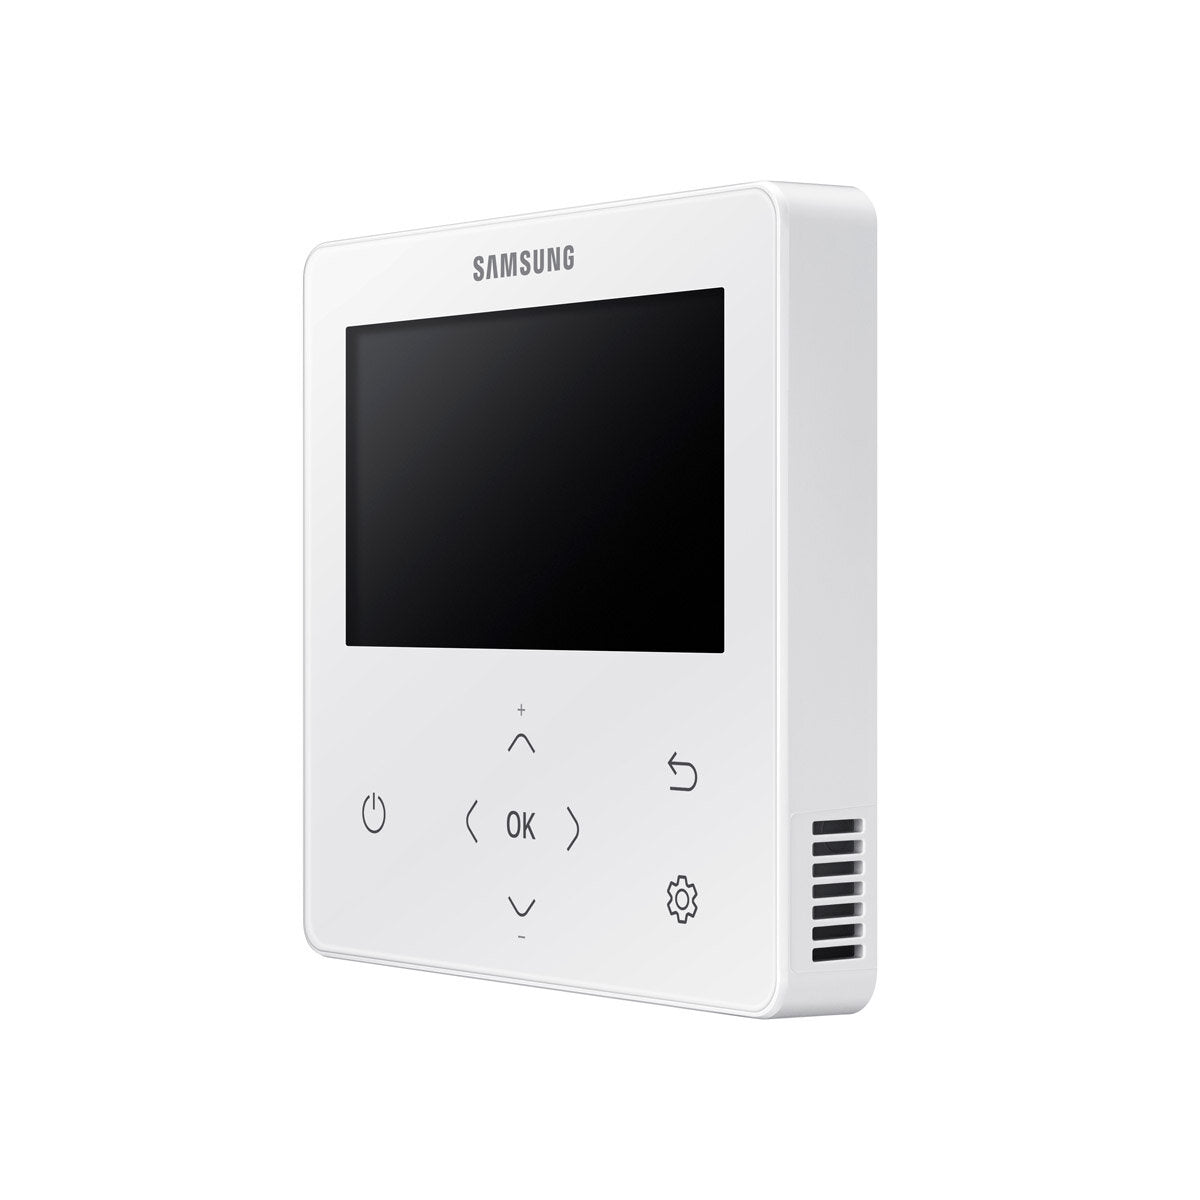 Samsung Climatiseur Cassette WindFree 1 Way penta split 9000 + 12000 + 12000 + 12000 + 12000 BTU inverter A++ unité extérieure 10.0 kW